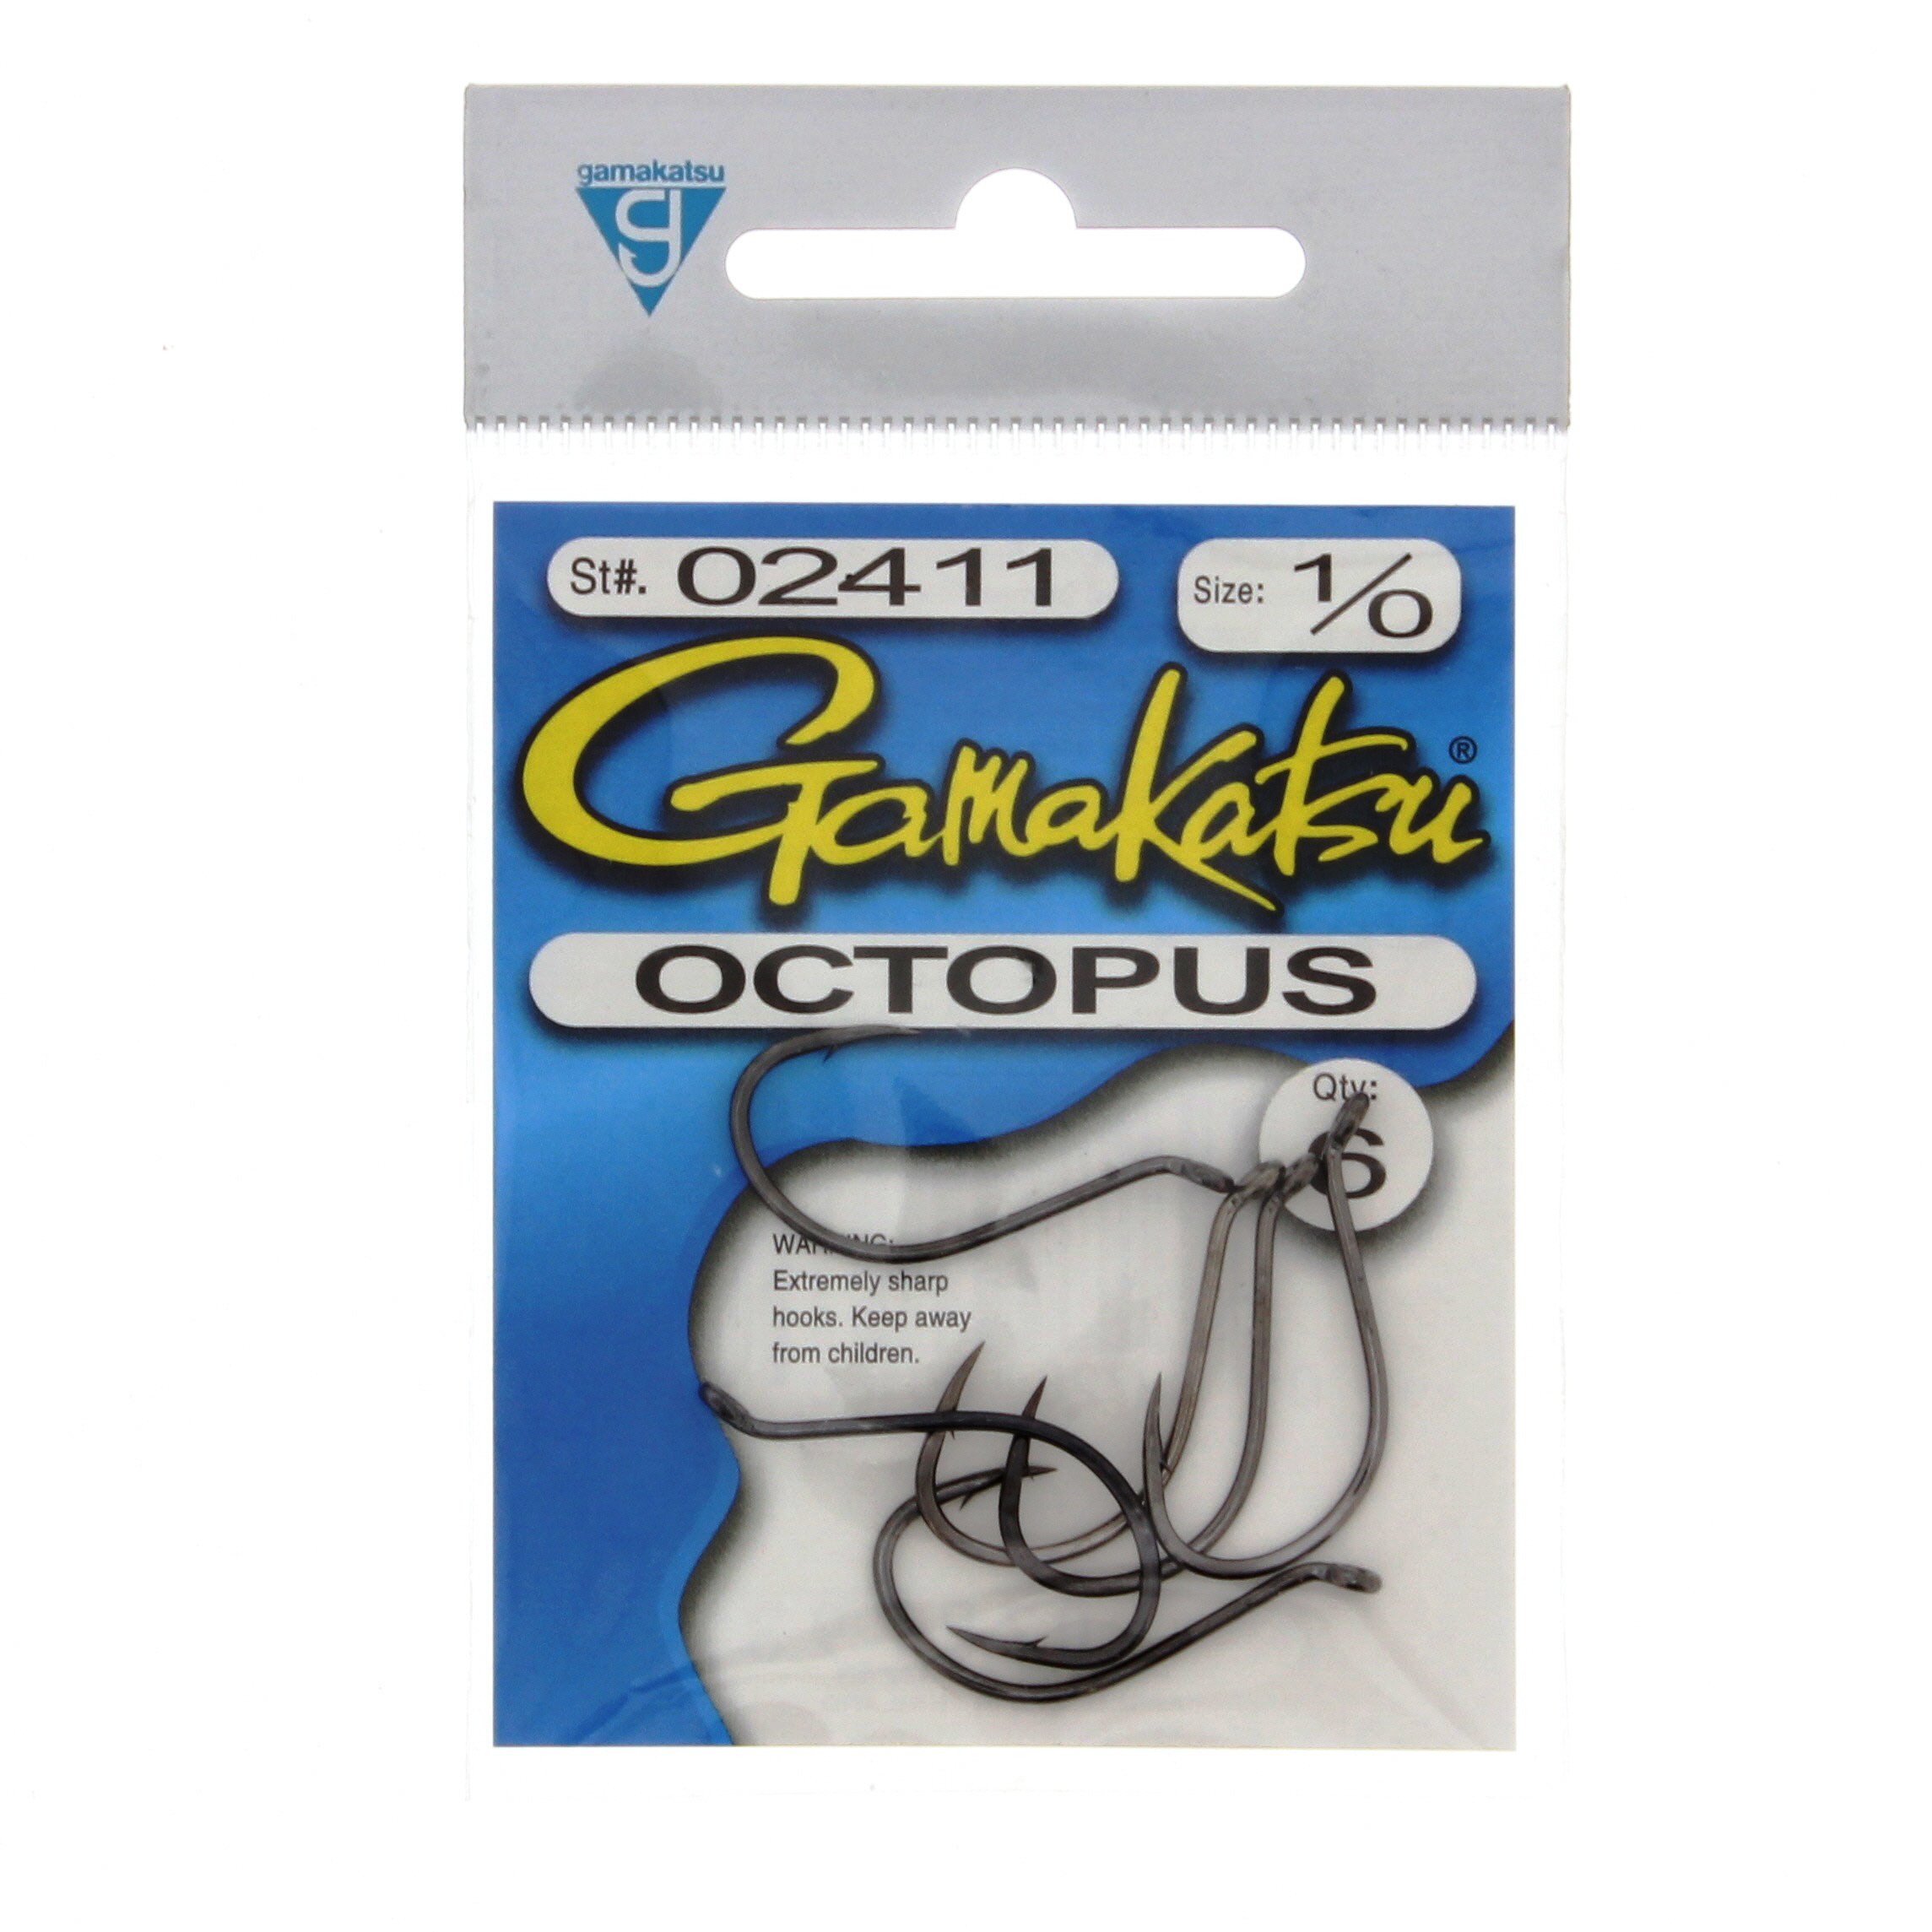 Gamakatsu Octopus NS Black Hook Size 7/0 25 Per Pack 02417-25 